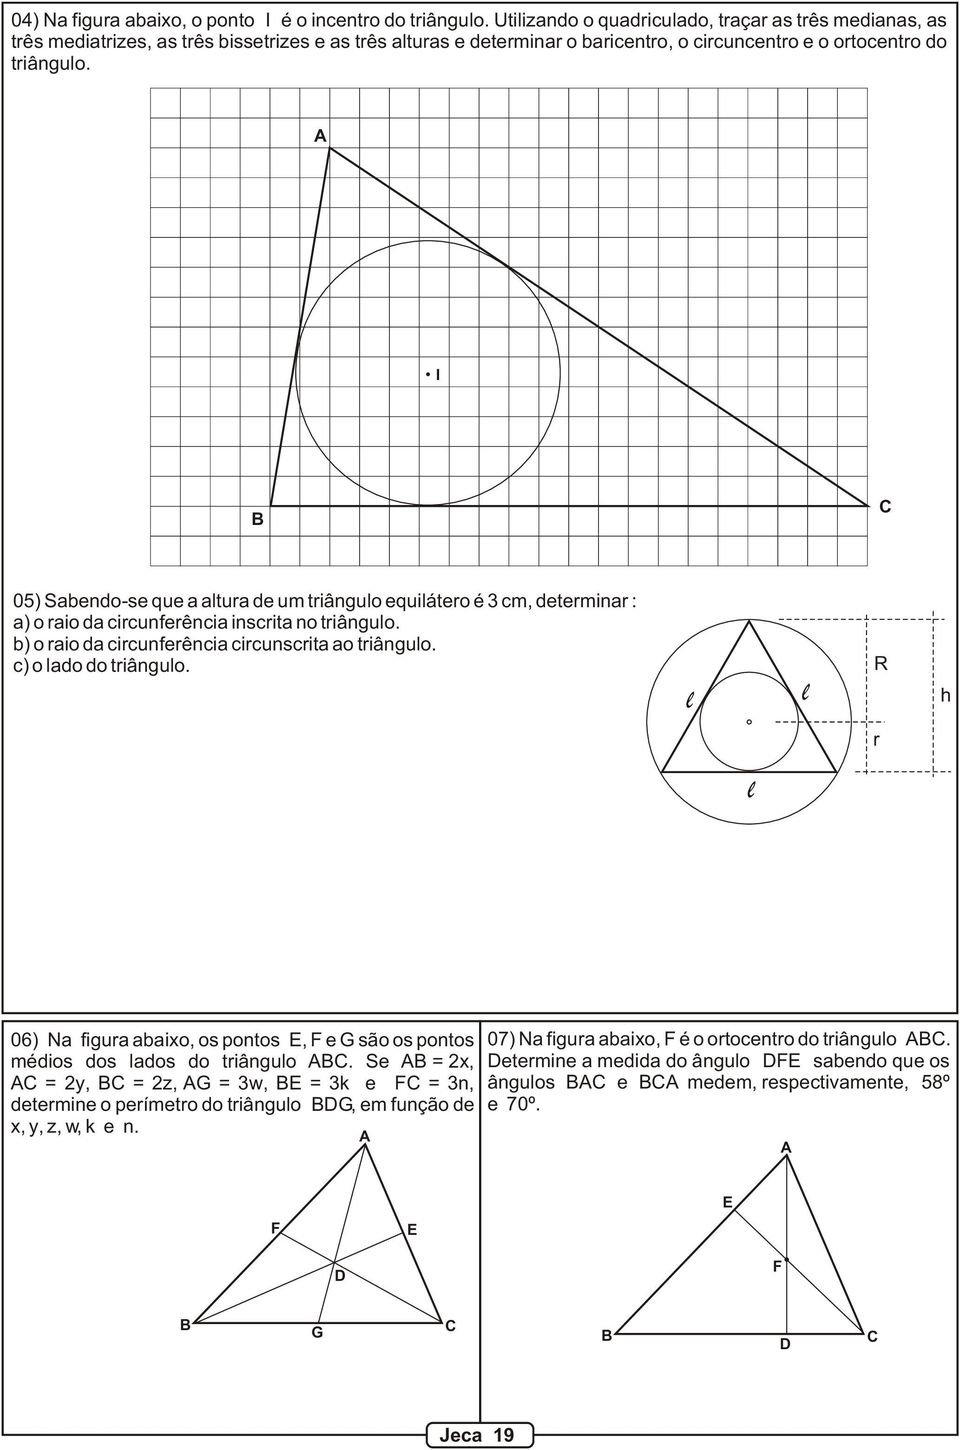 I 05) Sabendo-se que a altura de um triângulo equilátero é 3 cm, determinar : a) o raio da circunferência inscrita no triângulo. b) o raio da circunferência circunscrita ao triângulo.